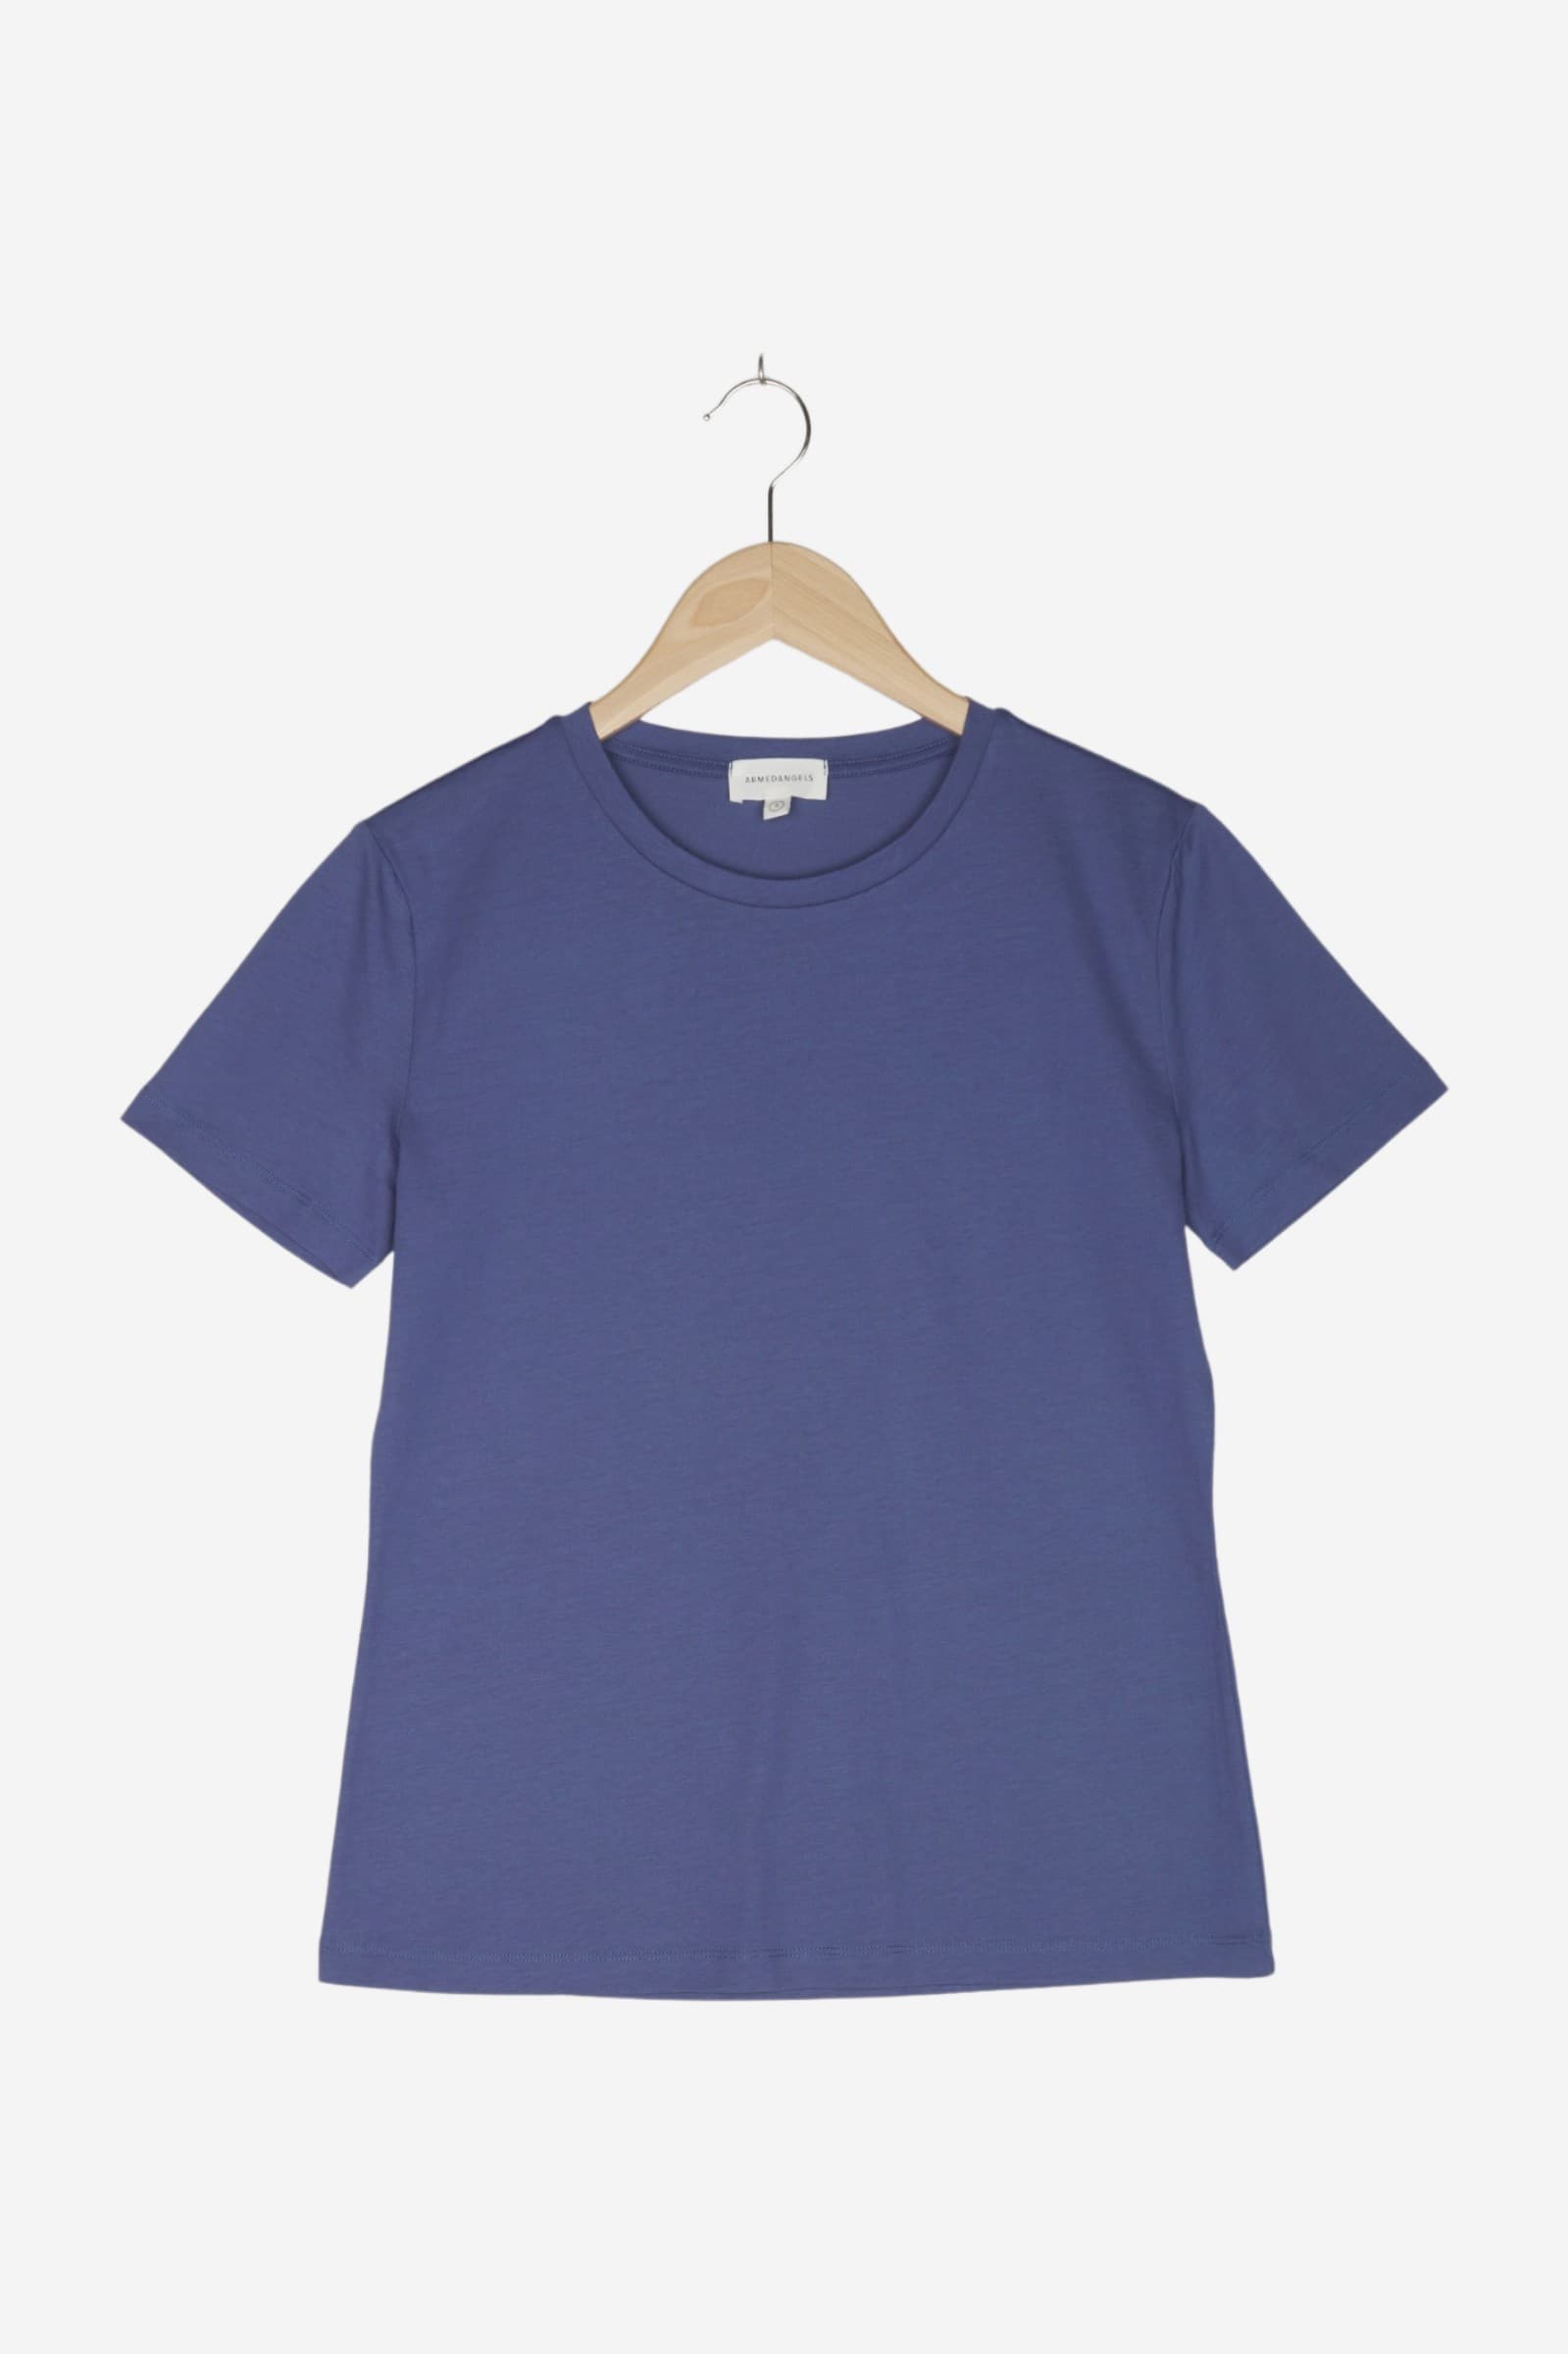 women Tops & T-Shirts Women / Shirts / T-Shirt Blue